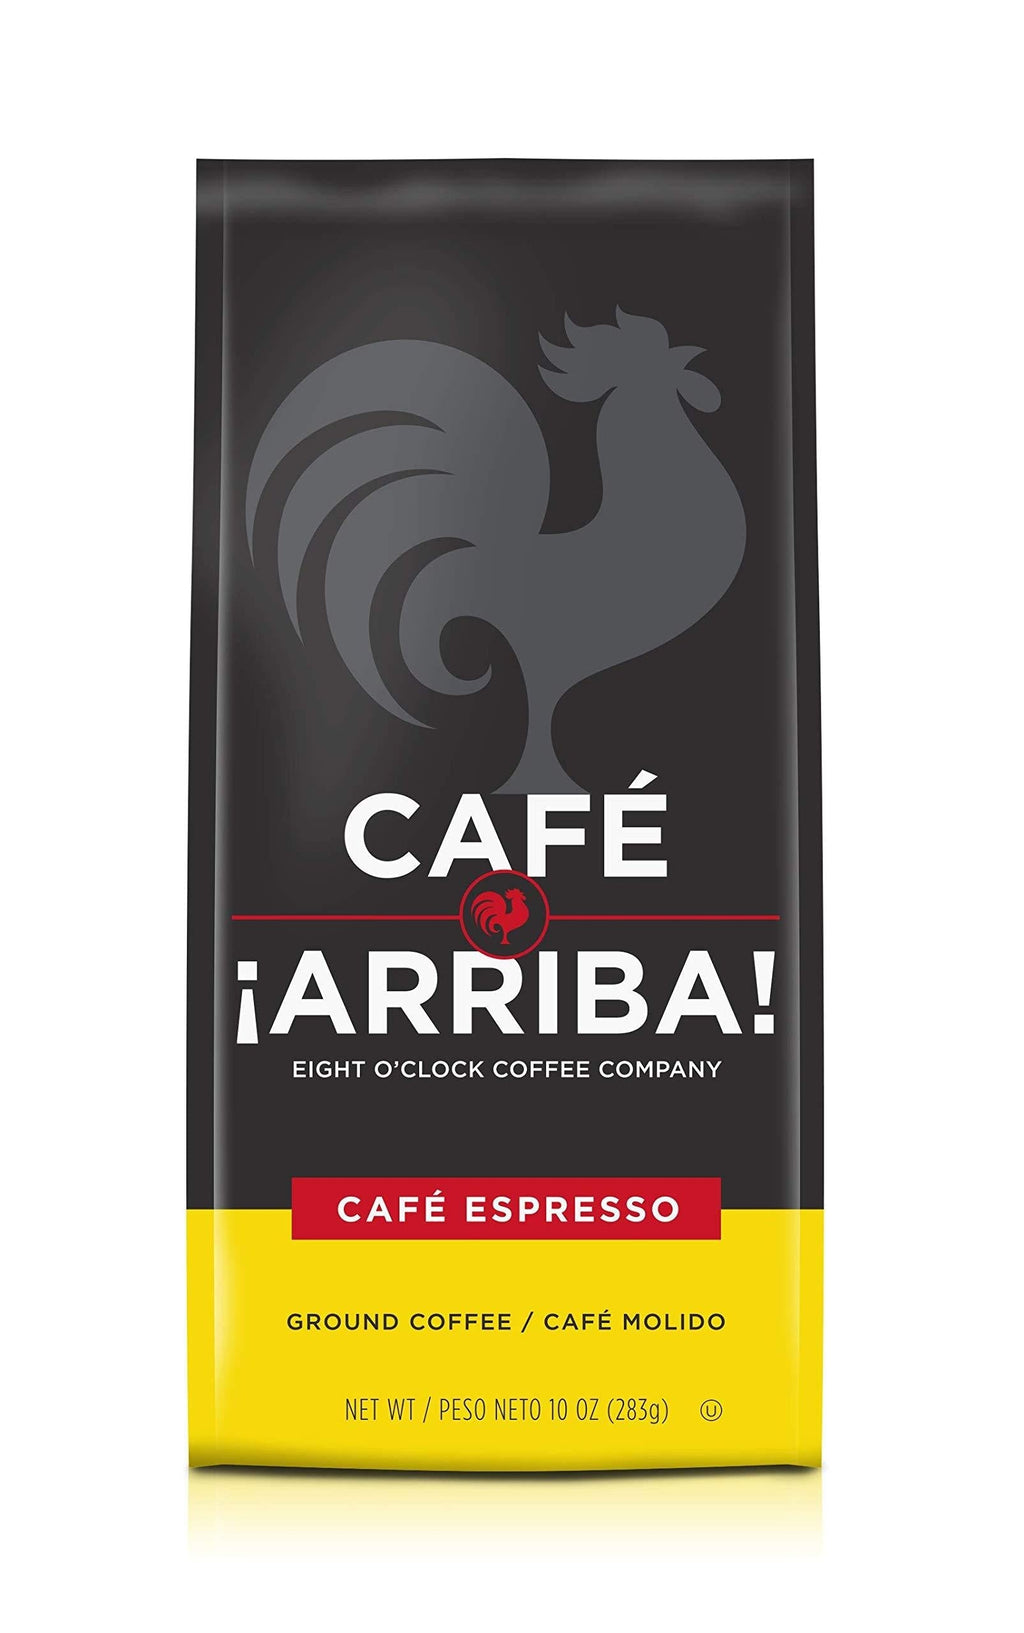  [AUSTRALIA] - Eight O'Clock Coffee Cafe Arriba, Ground Coffee, Cafe Espresso Medium Roast, 10 Oz Café Espresso